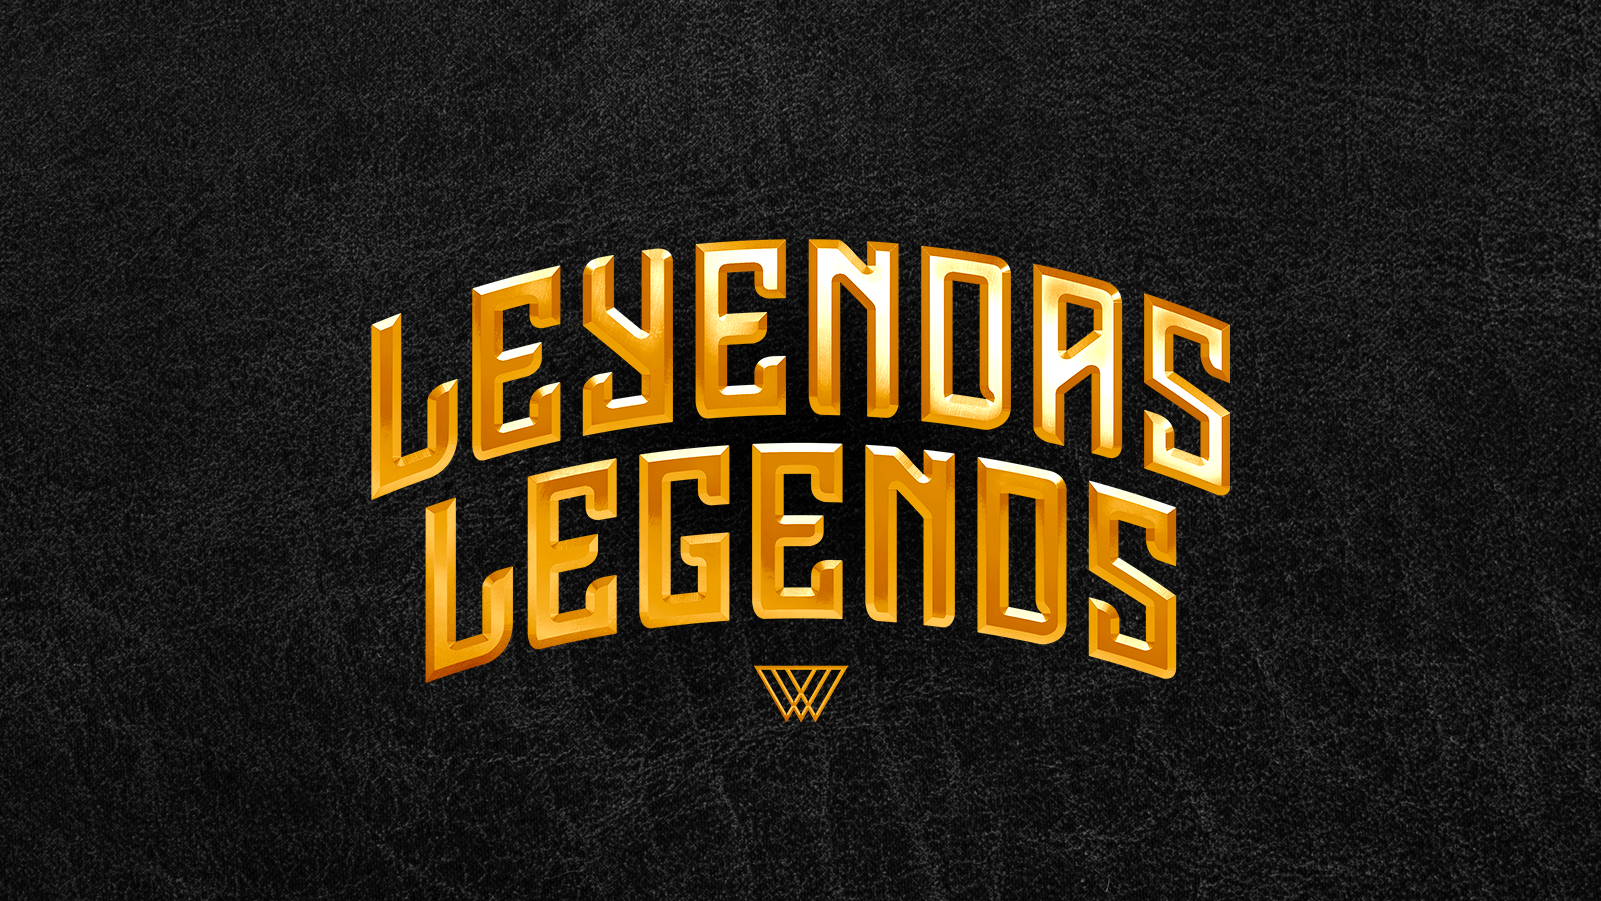 VC Legends 16x9 001.png